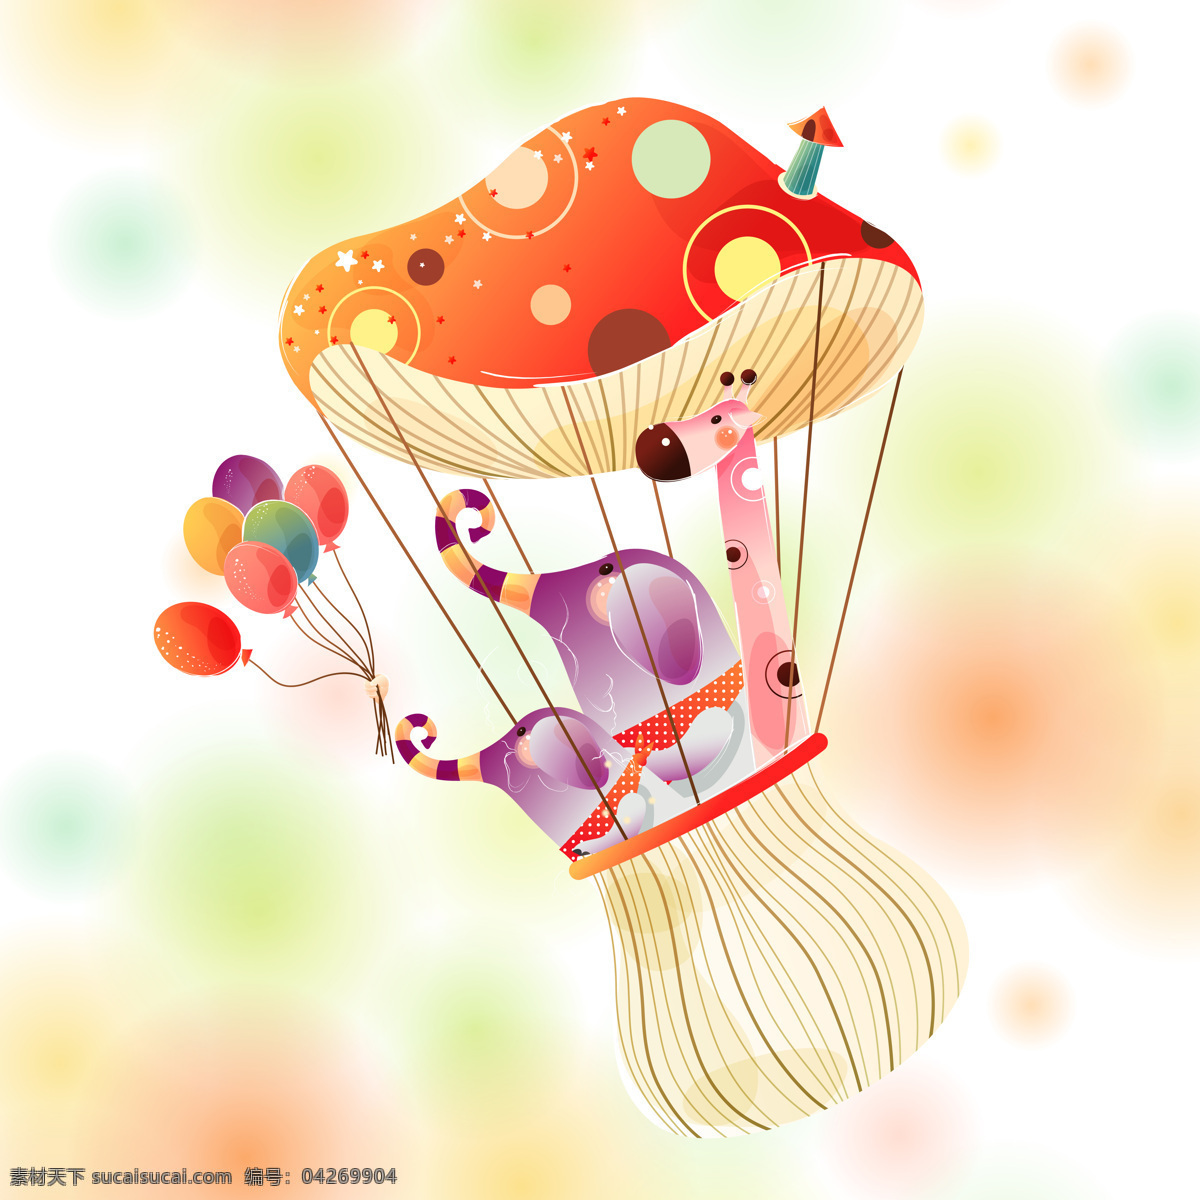 彩色 蘑菇 热气球 装饰画 卡通 梦幻 可爱